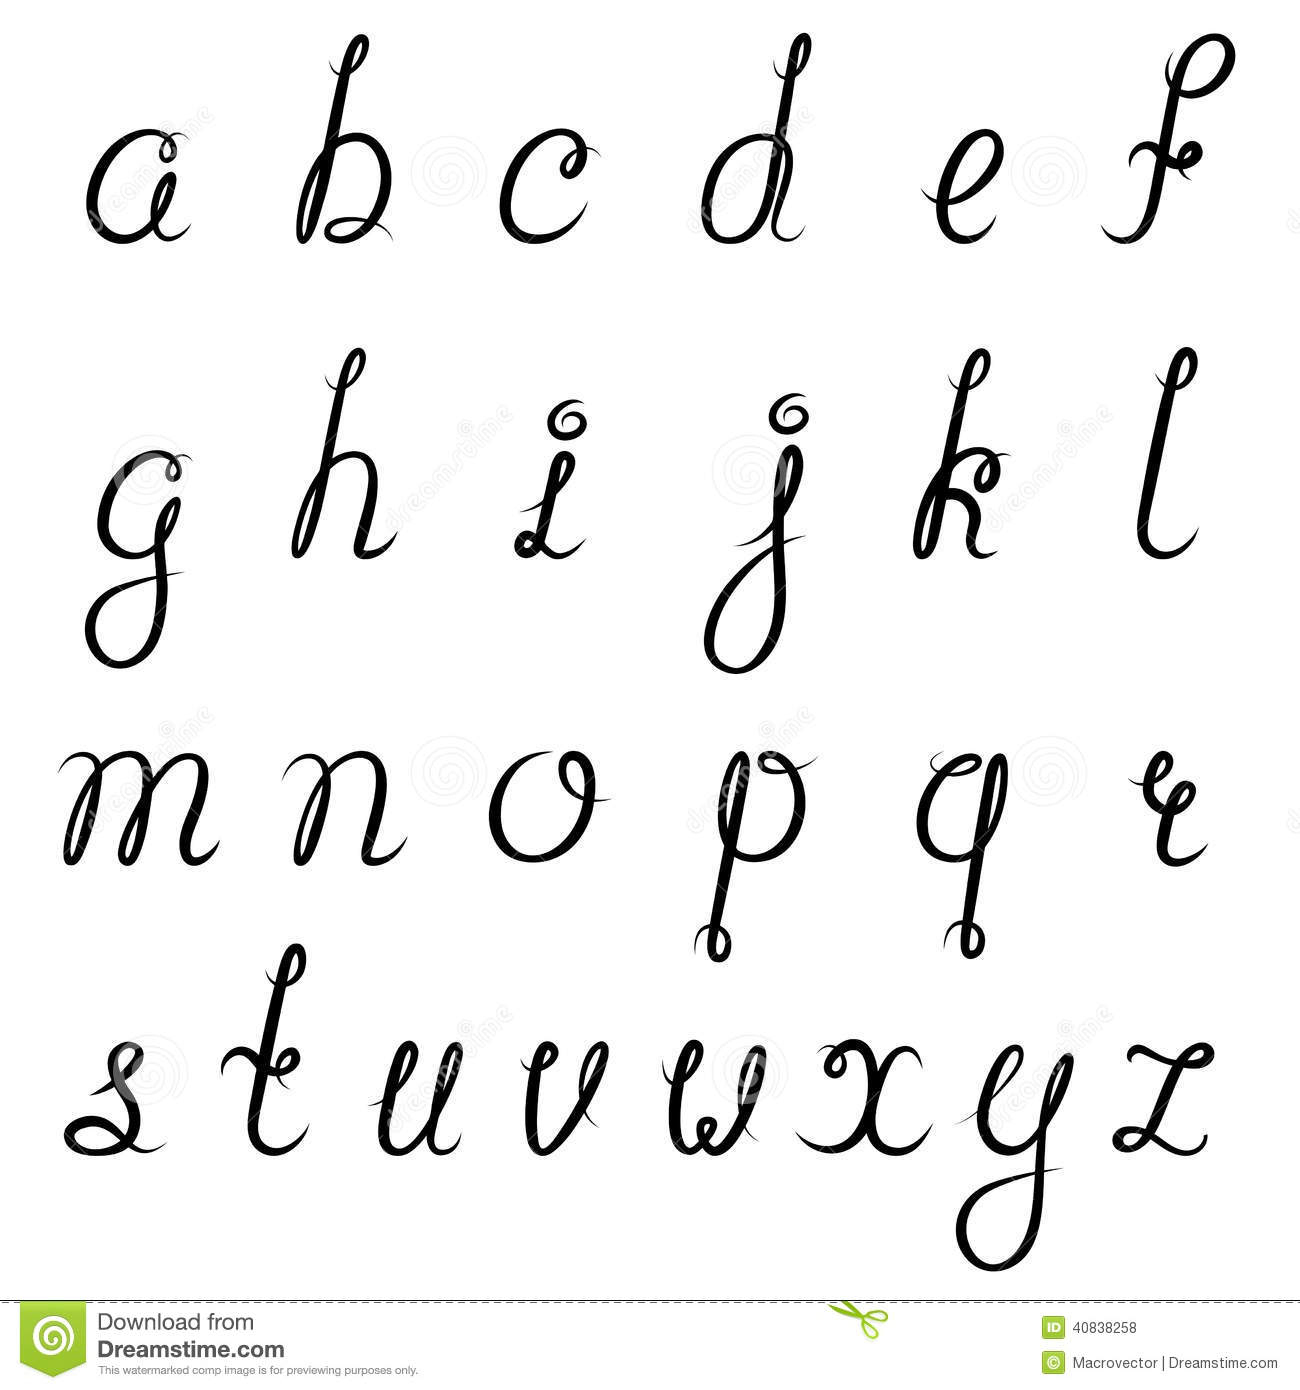 Noir D&amp;#039;alphabet De Calligraphie Illustration De Vecteur dedans Modele Calligraphie Alphabet Gratuit 